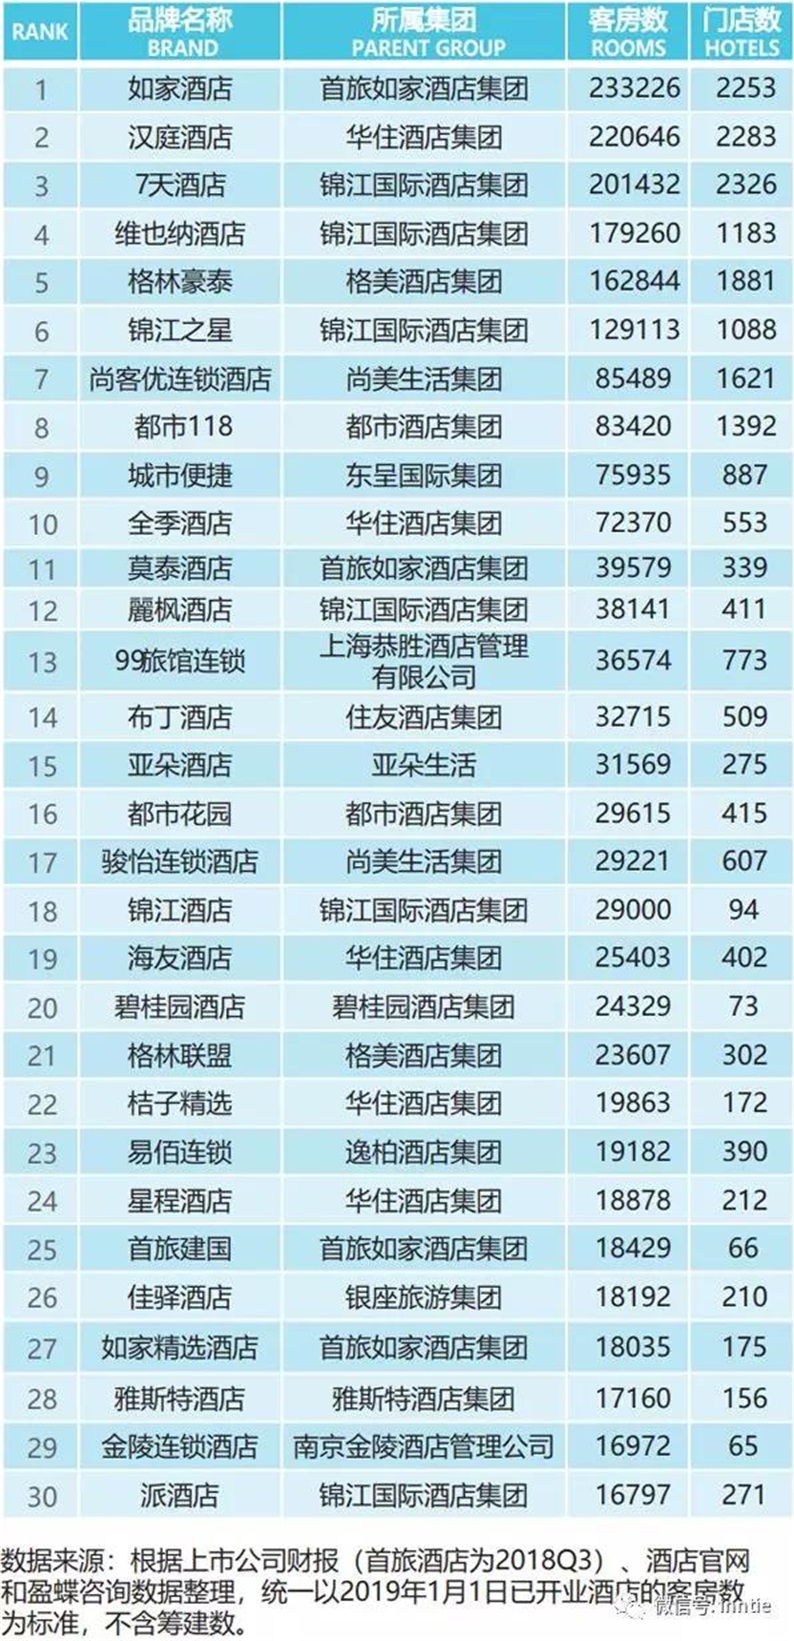 2019中国连锁酒店品牌规模top30排行榜